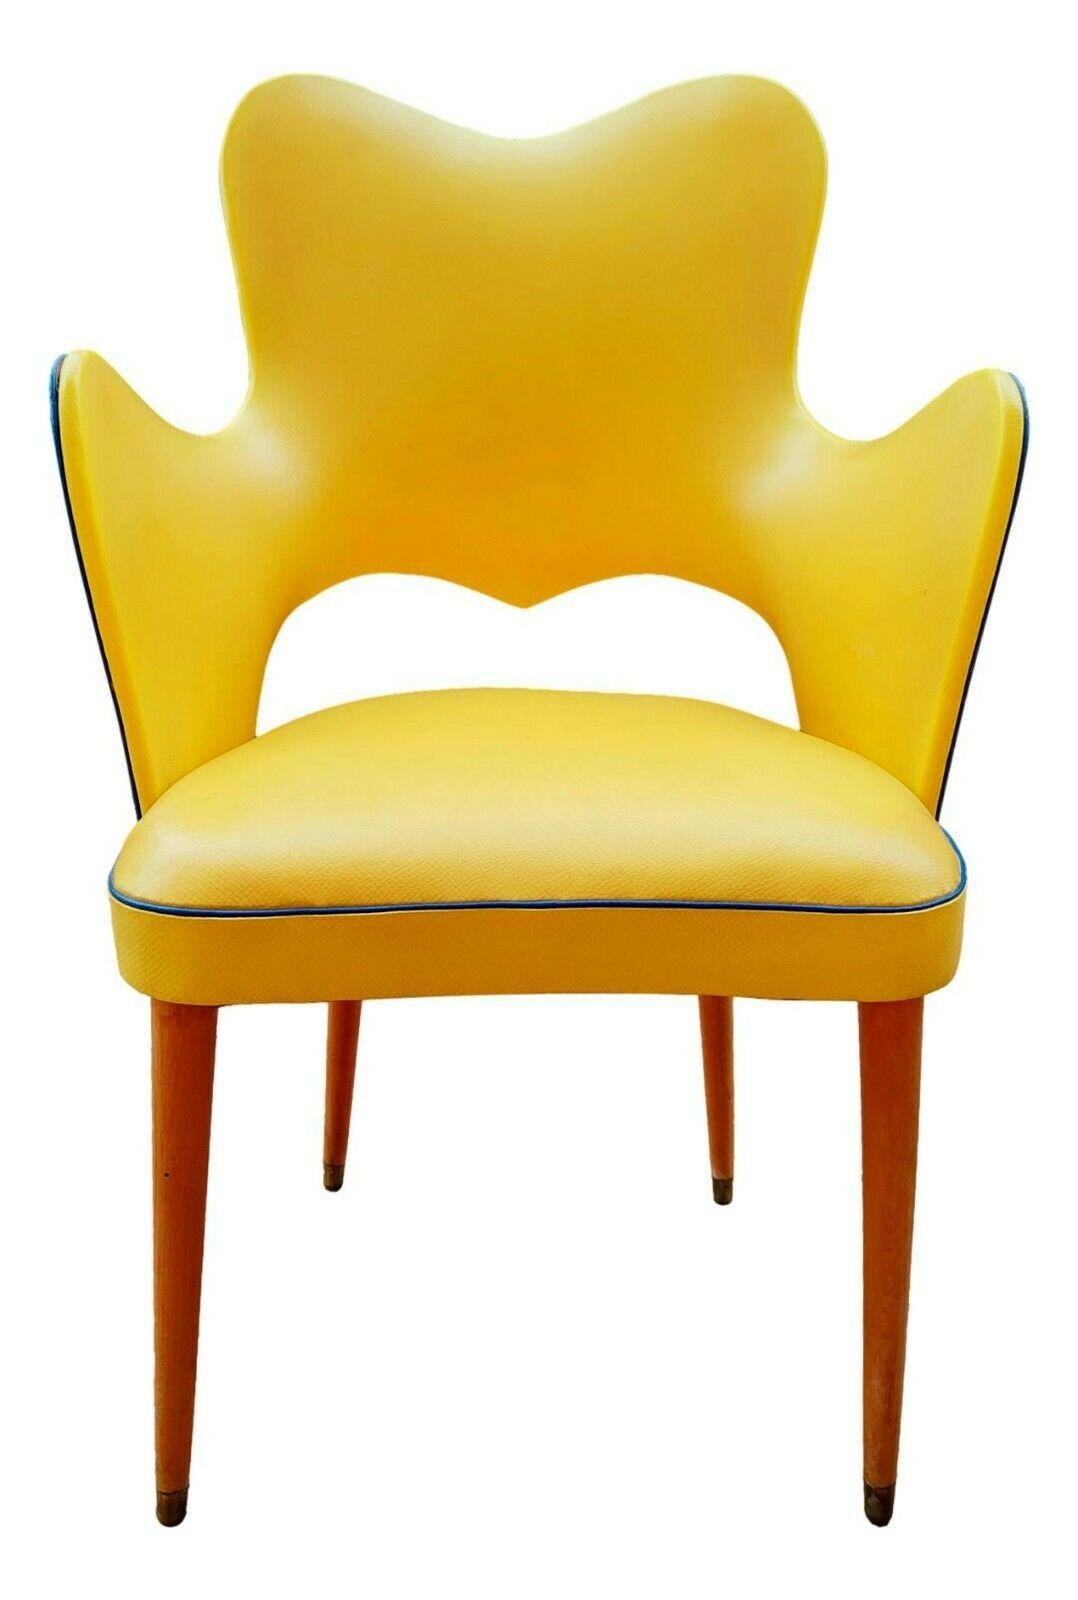 Rare et splendide fauteuil en skaï bicolore, début des années 1950, design souvent attribué à Gastone Rinaldi, réalisé sur un cadre en bois avec une forme enveloppante qui se termine par une paire d'accoudoirs confortables

Pieds en bois avec